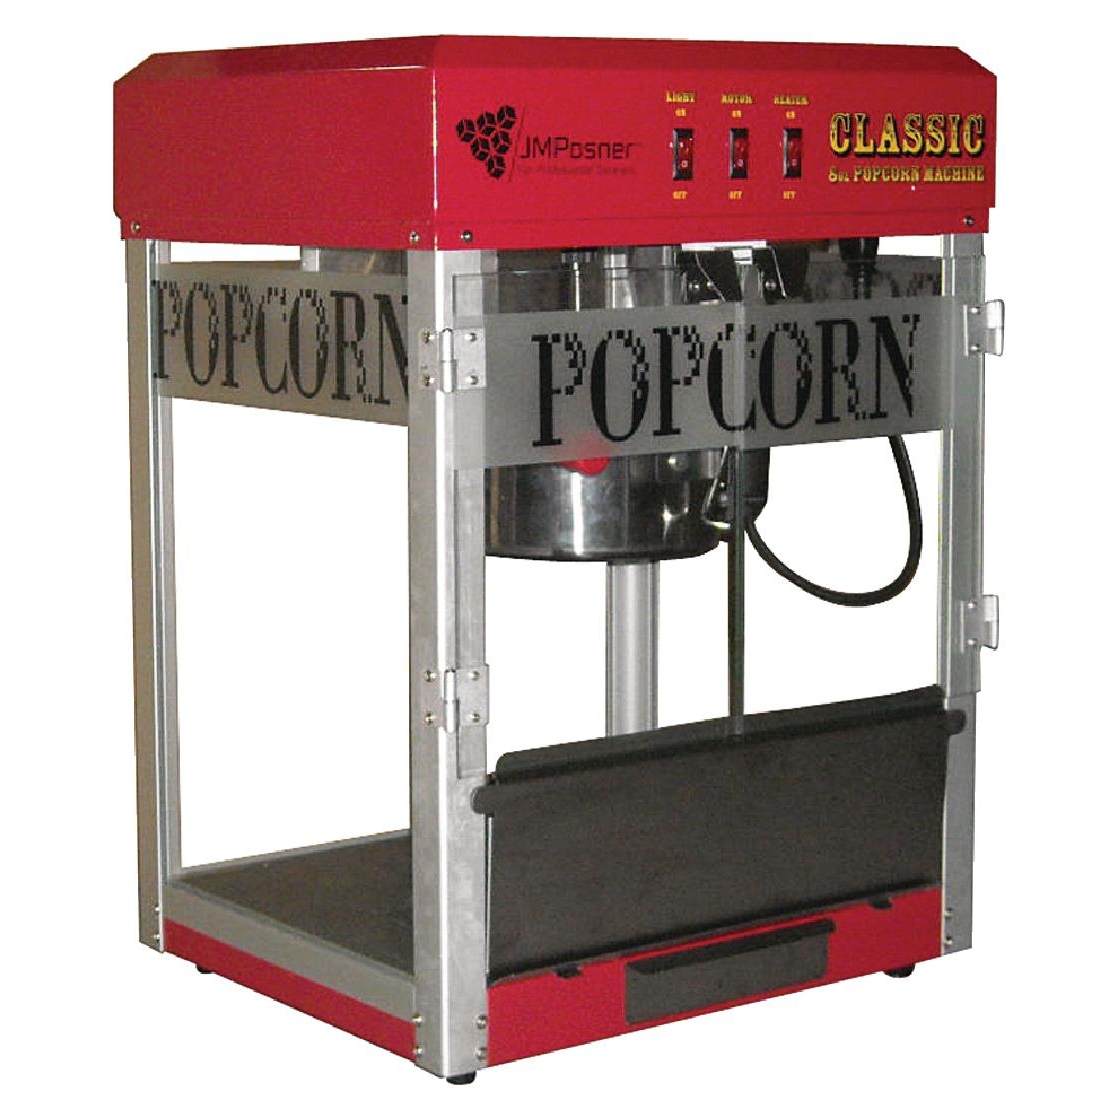 JM Posner Popcorn Maker DK867